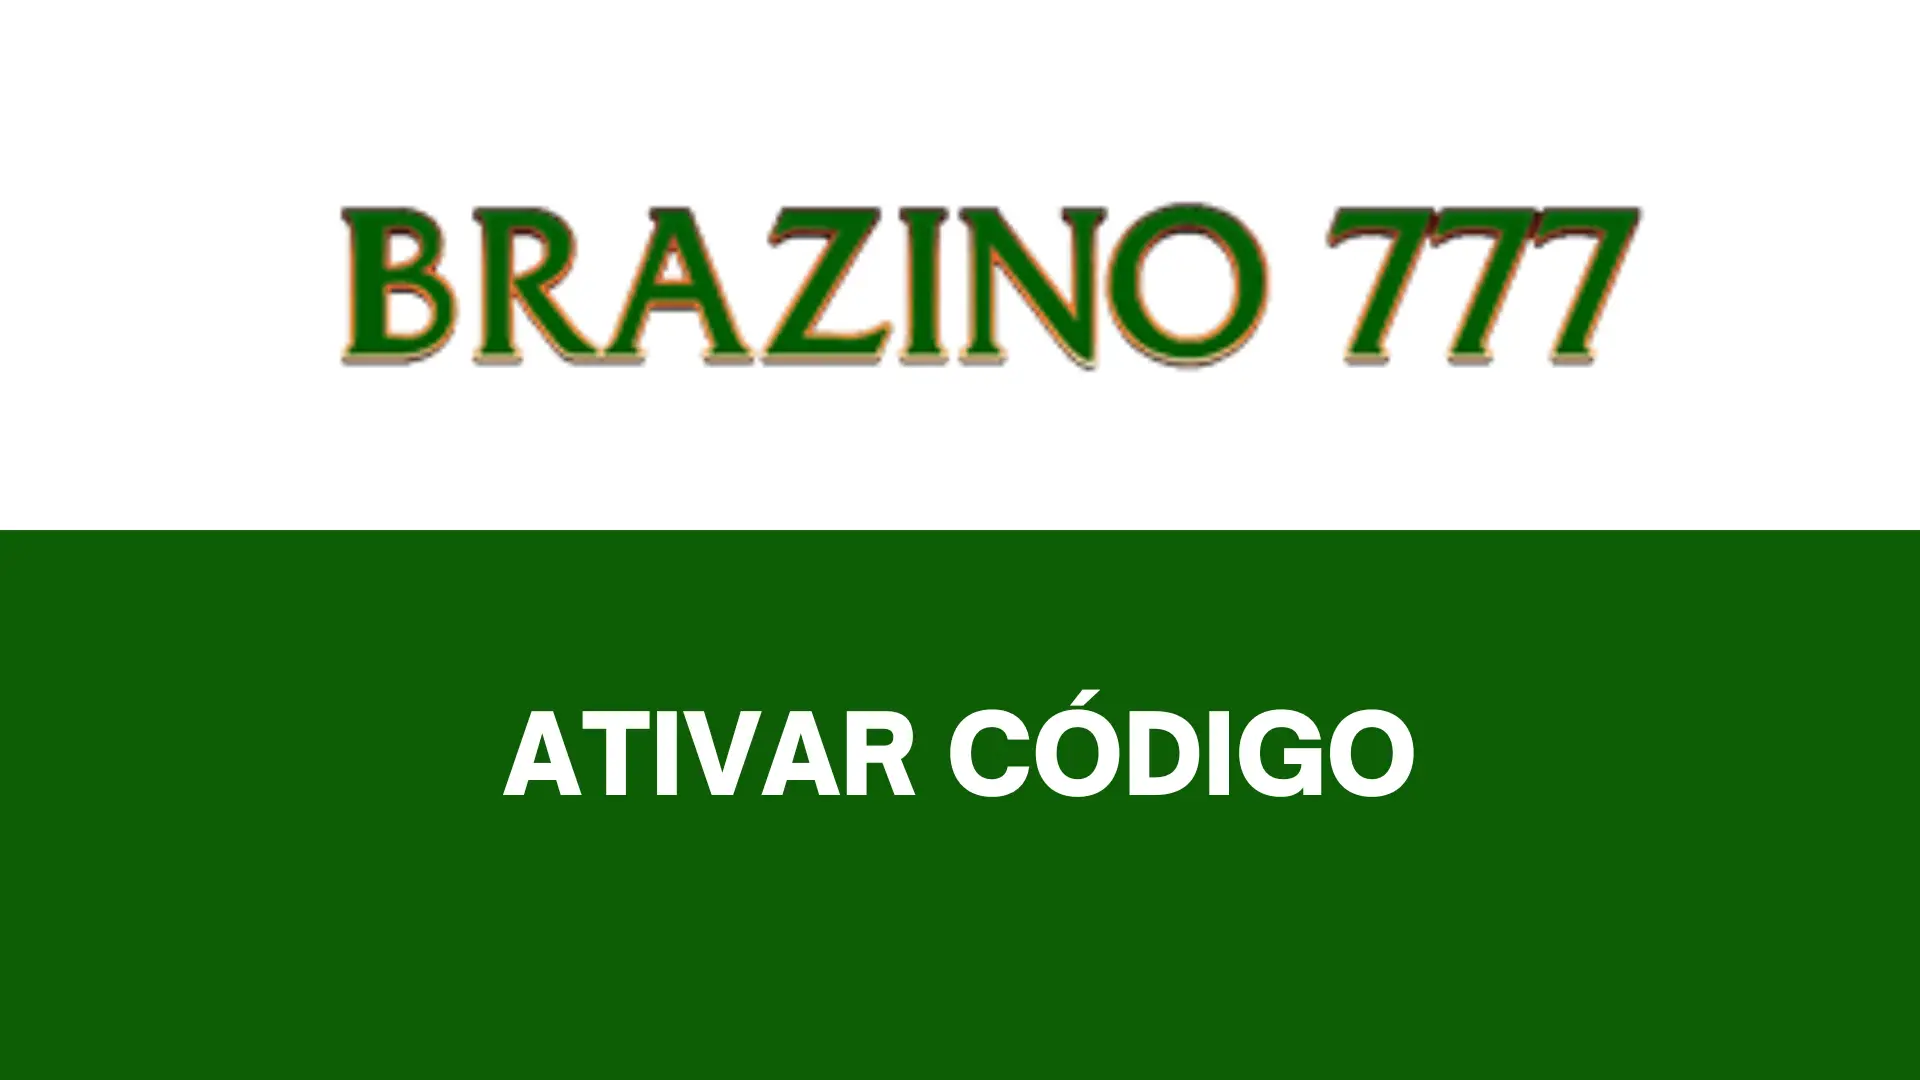 Codigos brazino777